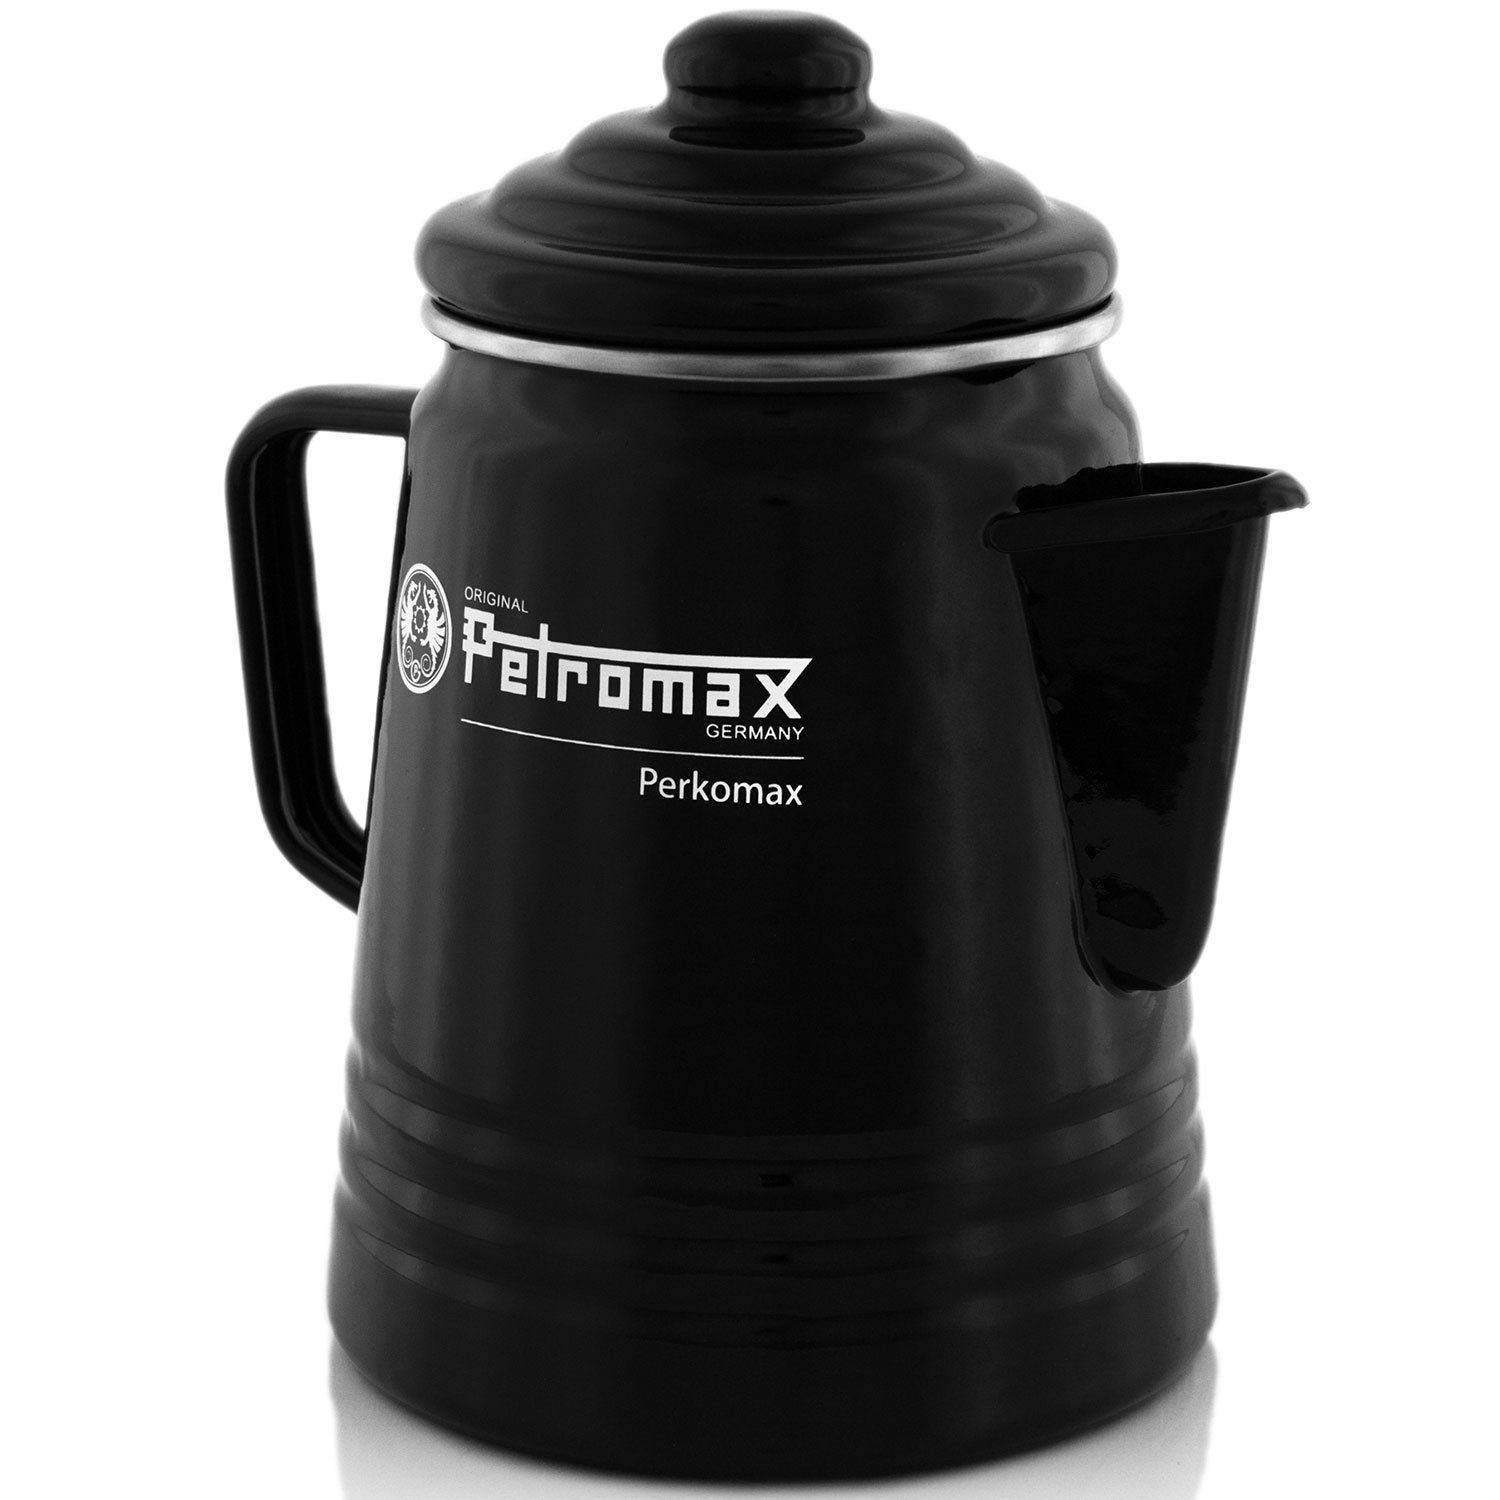 Outdoor in Petromax 7 Geschirr-Set schwarz, teilig Perkolator+Becher+Schüssel+Teller Perkolator Vorteils-Set